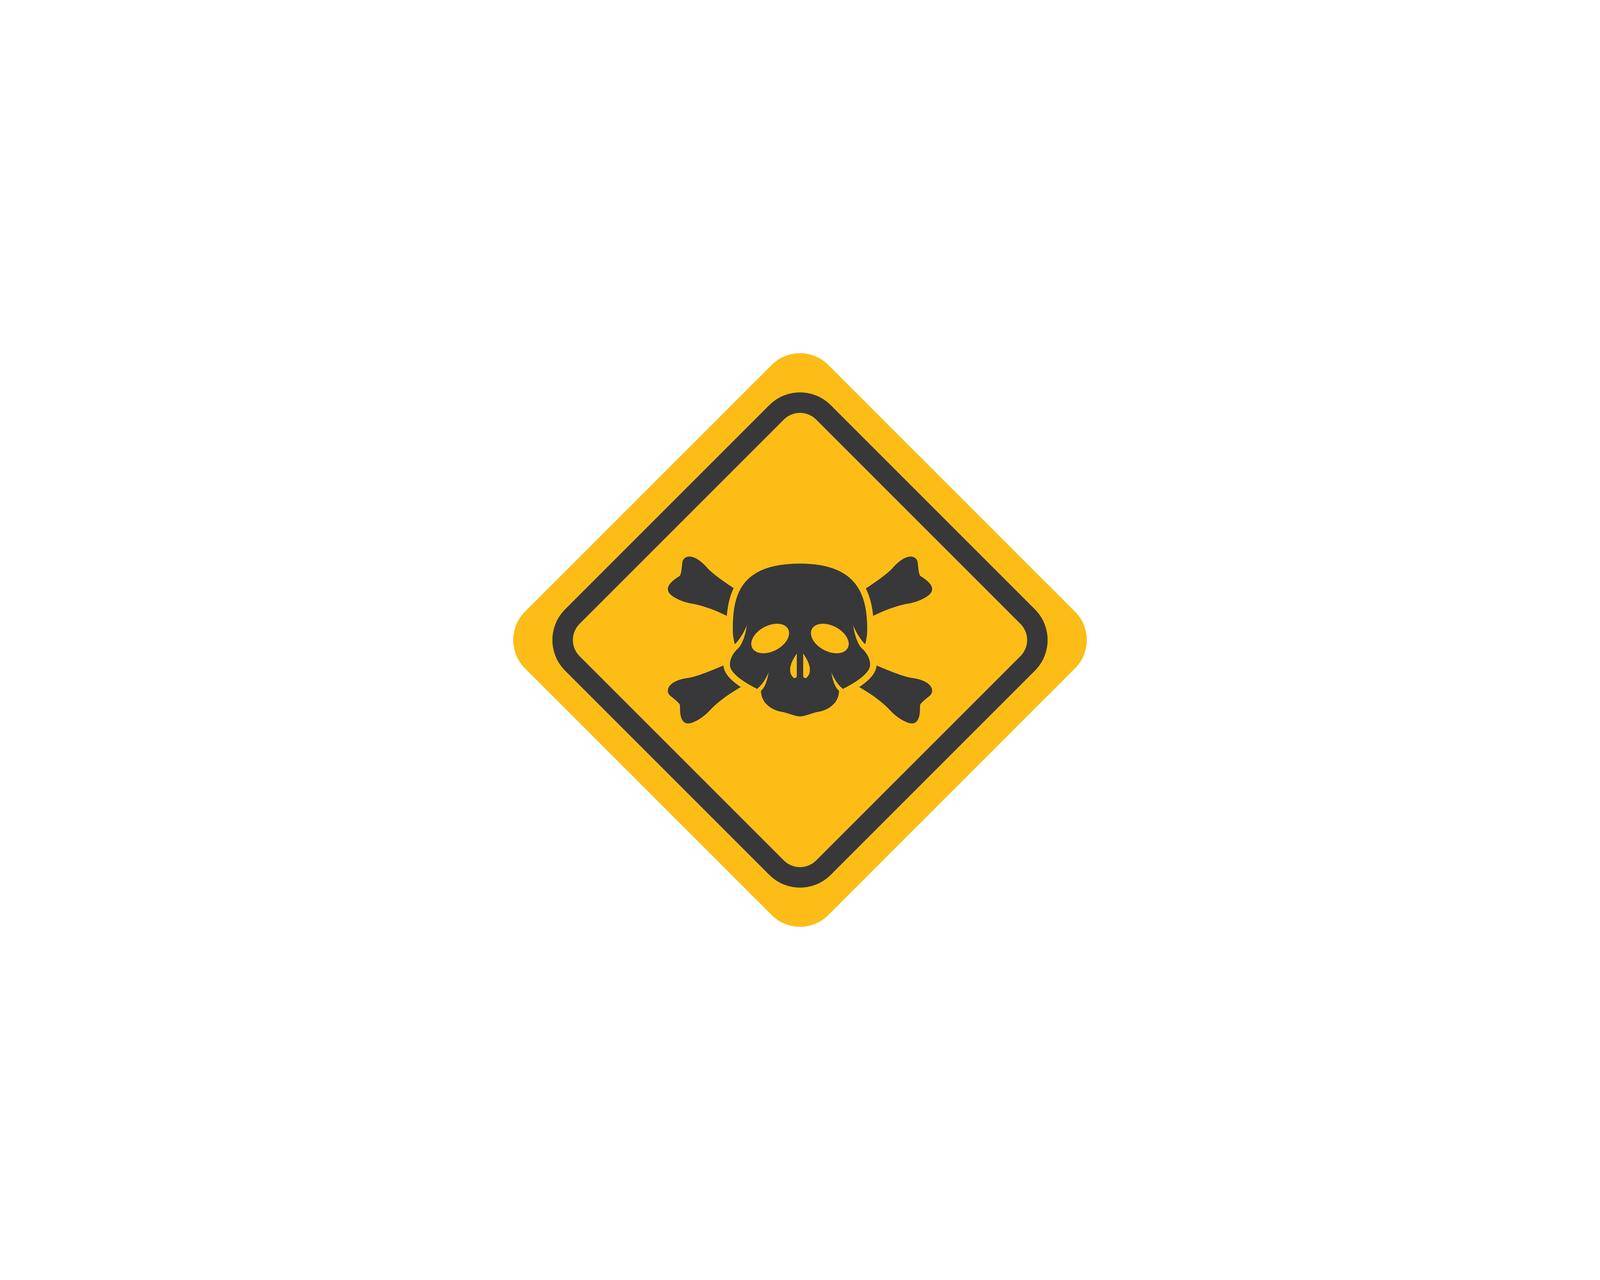 Skull Danger icon by awk